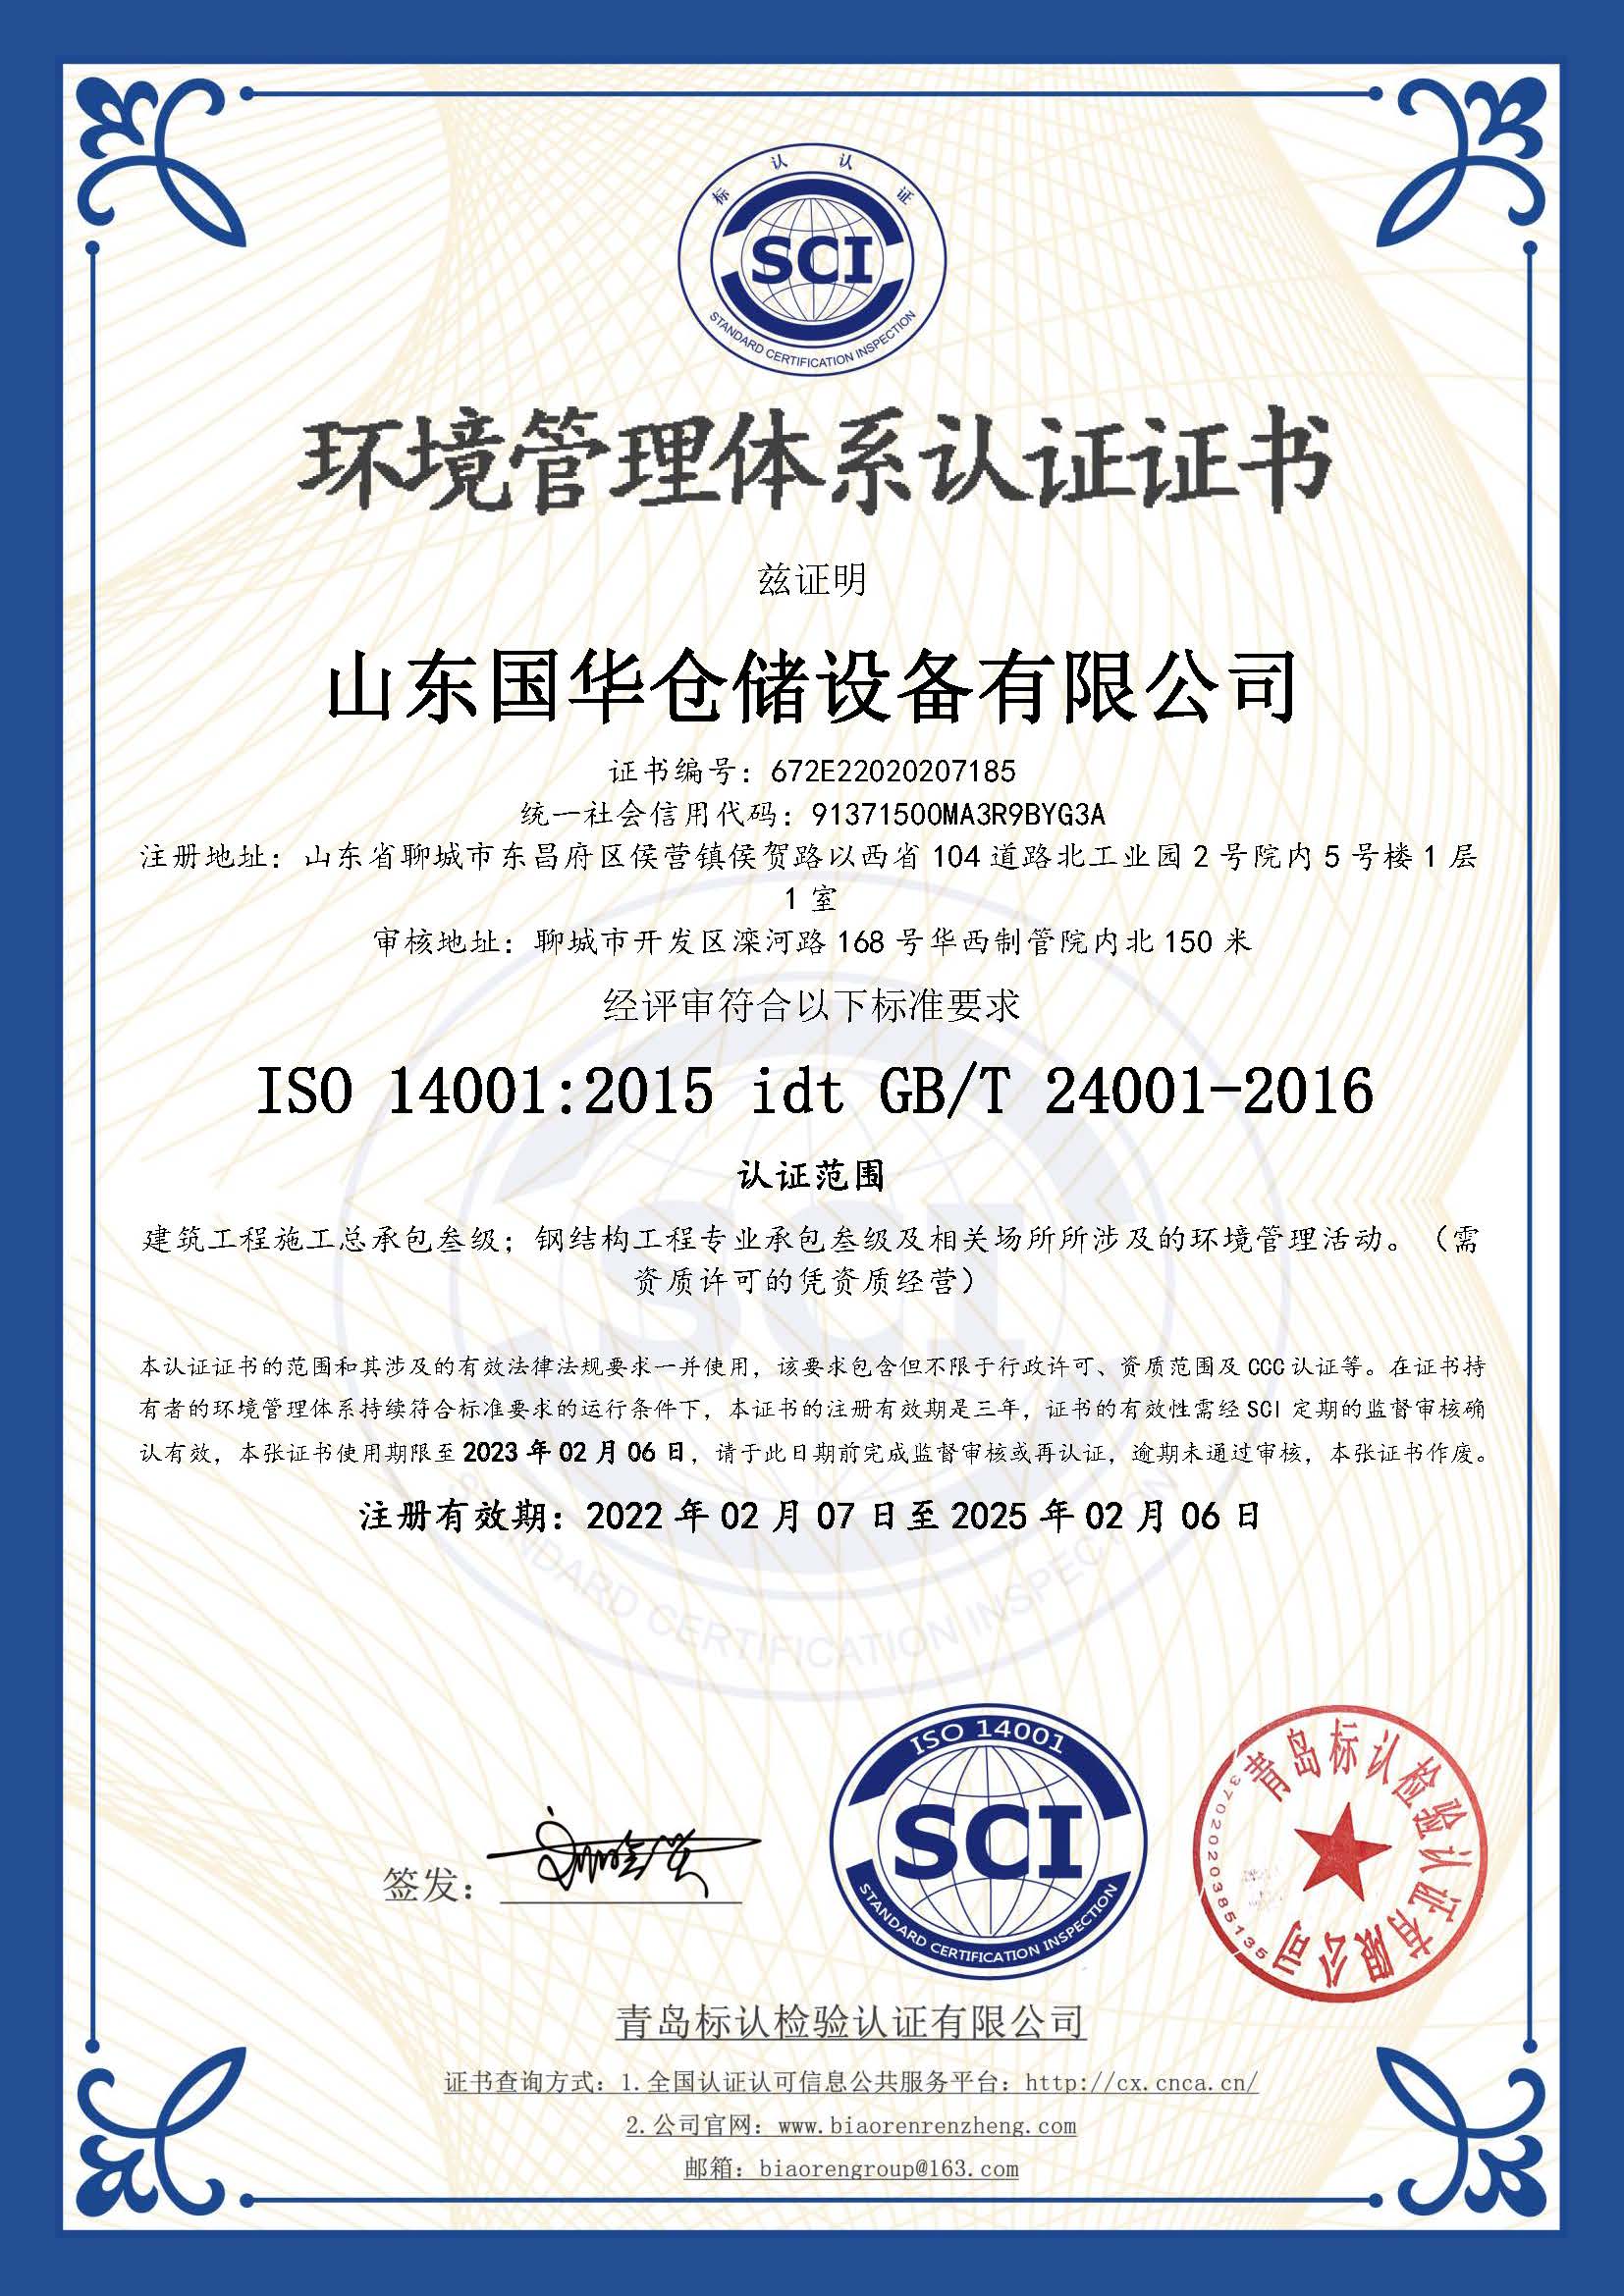 青岛钢板仓环境管理体系认证证书